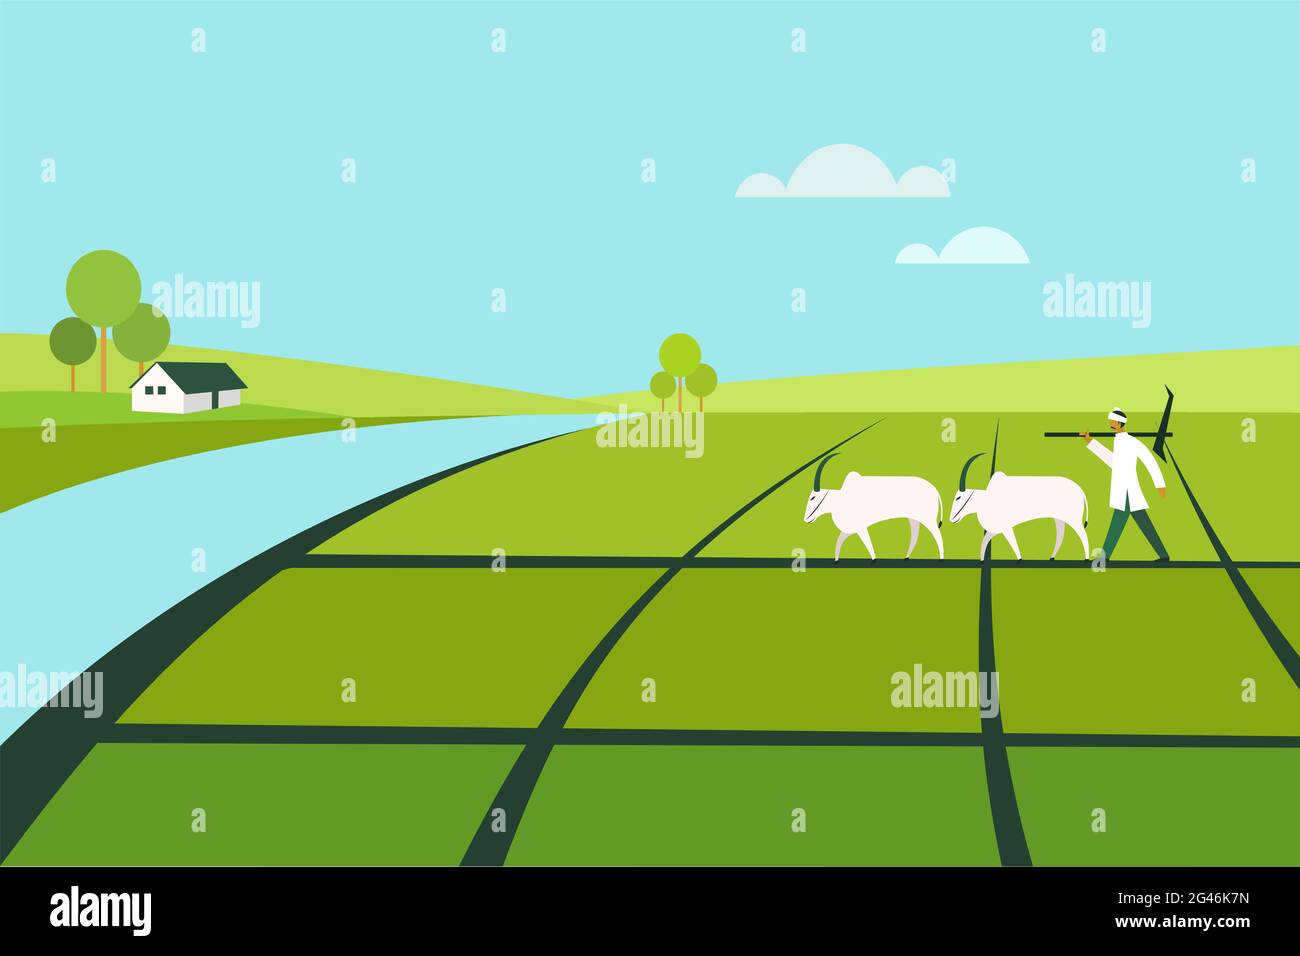 Der Bauer mit einem Pflug geht mit einem Paar Ochsen durch das landwirtschaftliche Feld Stock Vektor